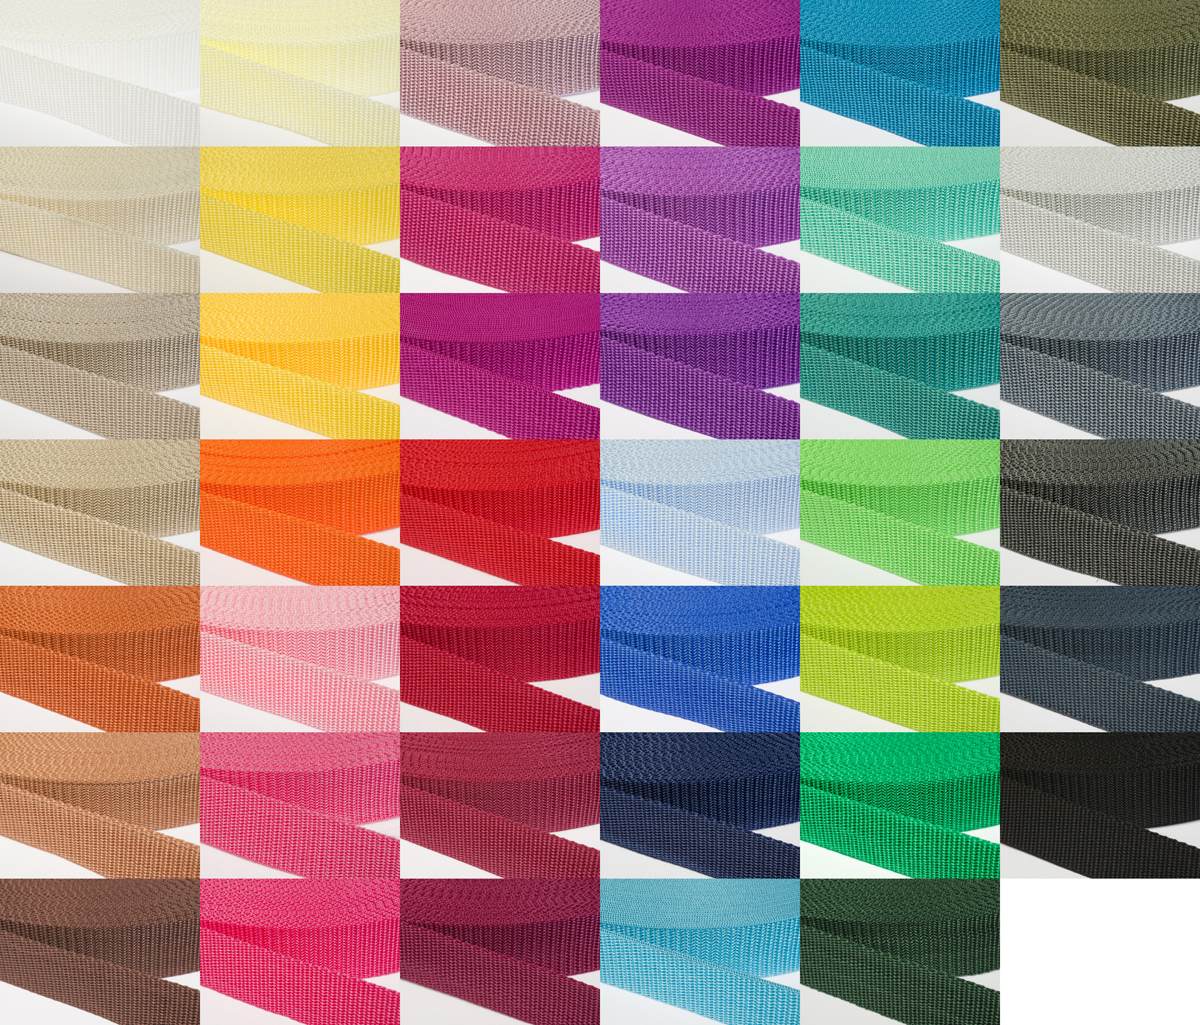 Gurtband 30mm breit aus Polypropylen in 41 Farben 39 - dunkelgrau 6 Meter